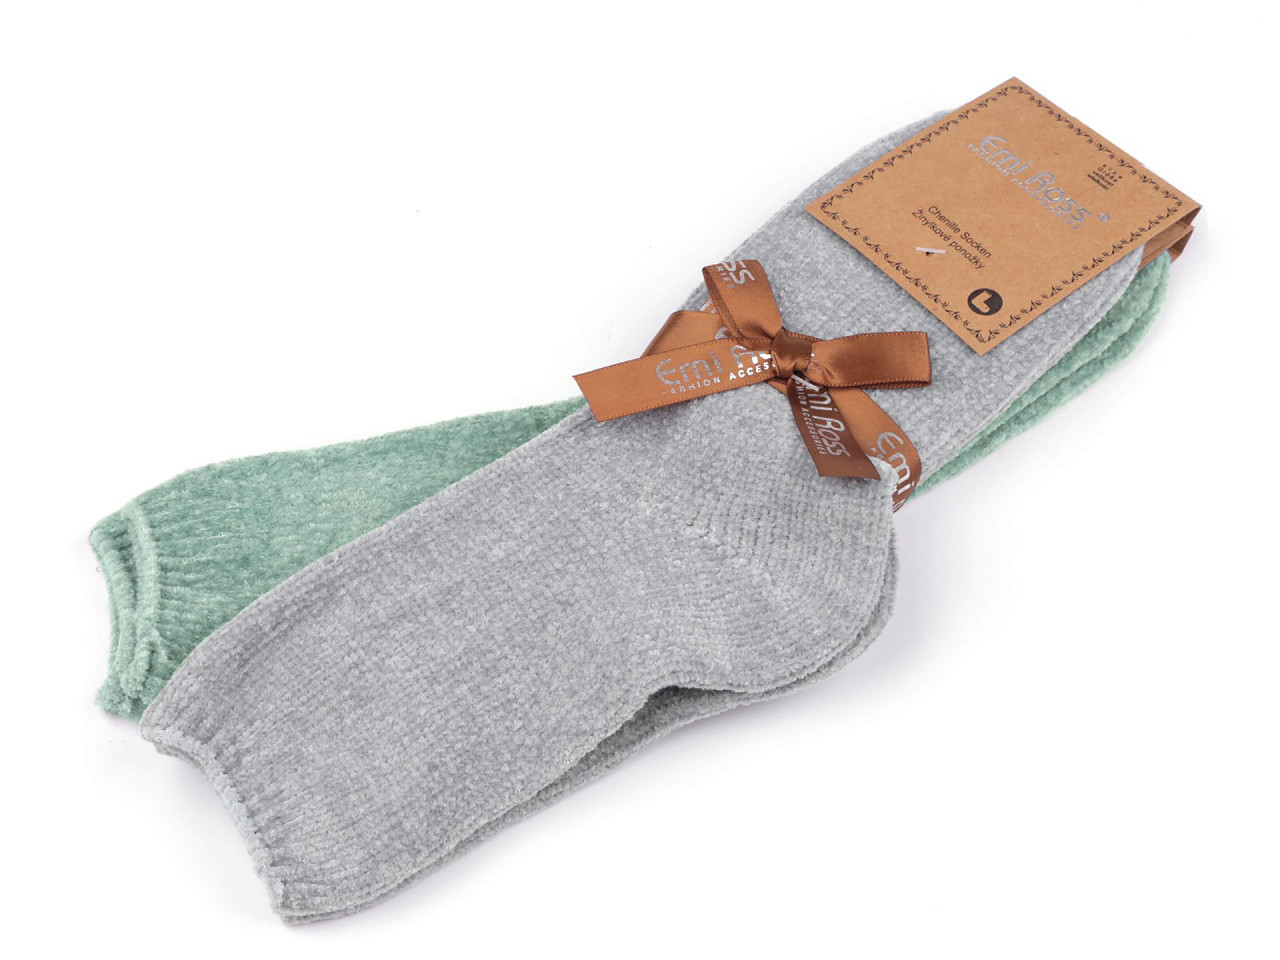 Dámské žinylkové ponožky Emi Ross, barva 23 (vel. 39-42) mix